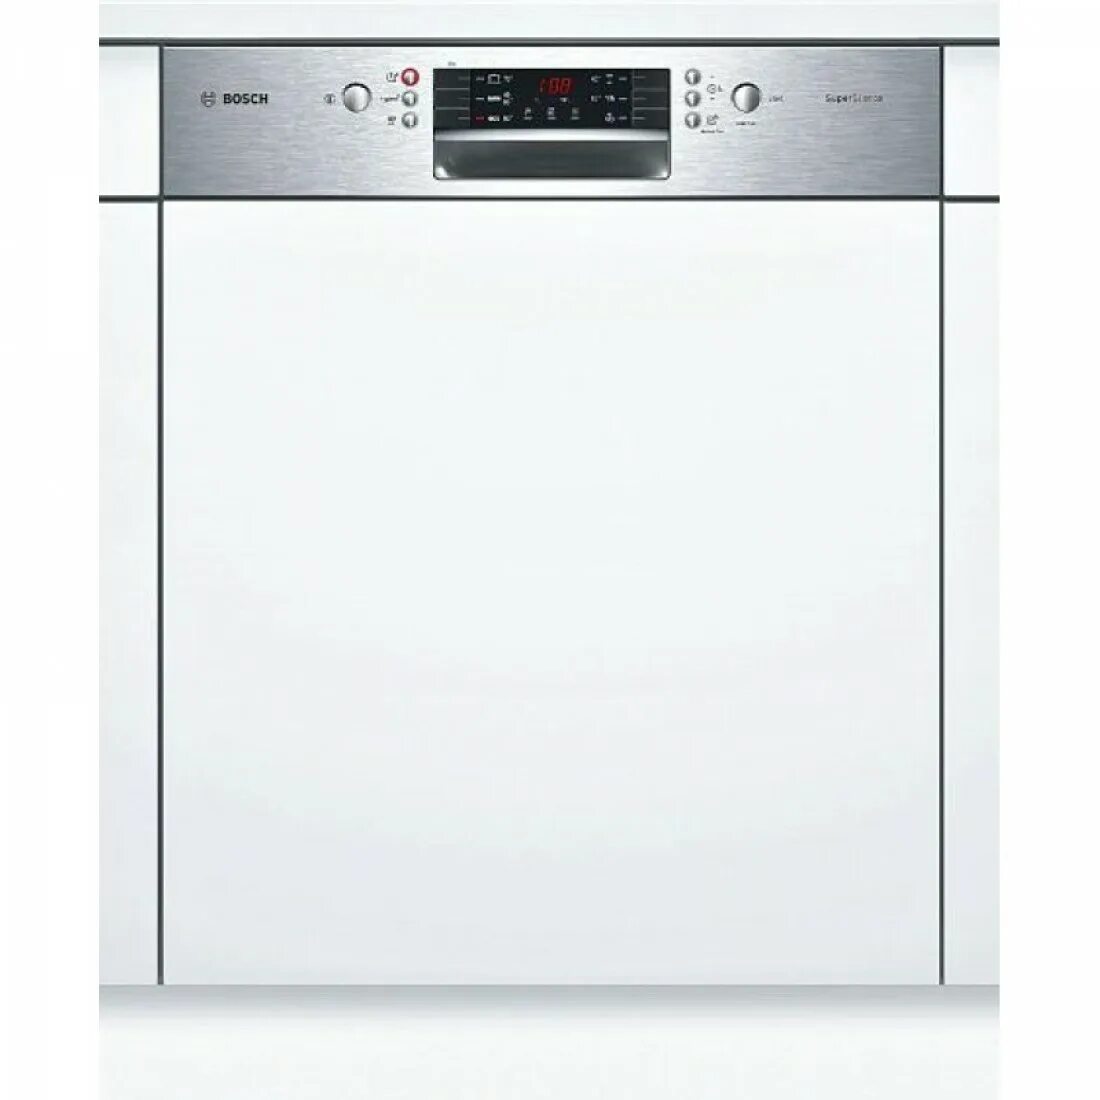 Посудомоечная машина Siemens SN 536s01 ke. Посудомоечная машина Bosch SMI 40m65. Bosch SMI 46ks00 t. Посудомоечная машина Bosch SMI 46ks01 e. Посудомойка бош 60 встраиваемая купить